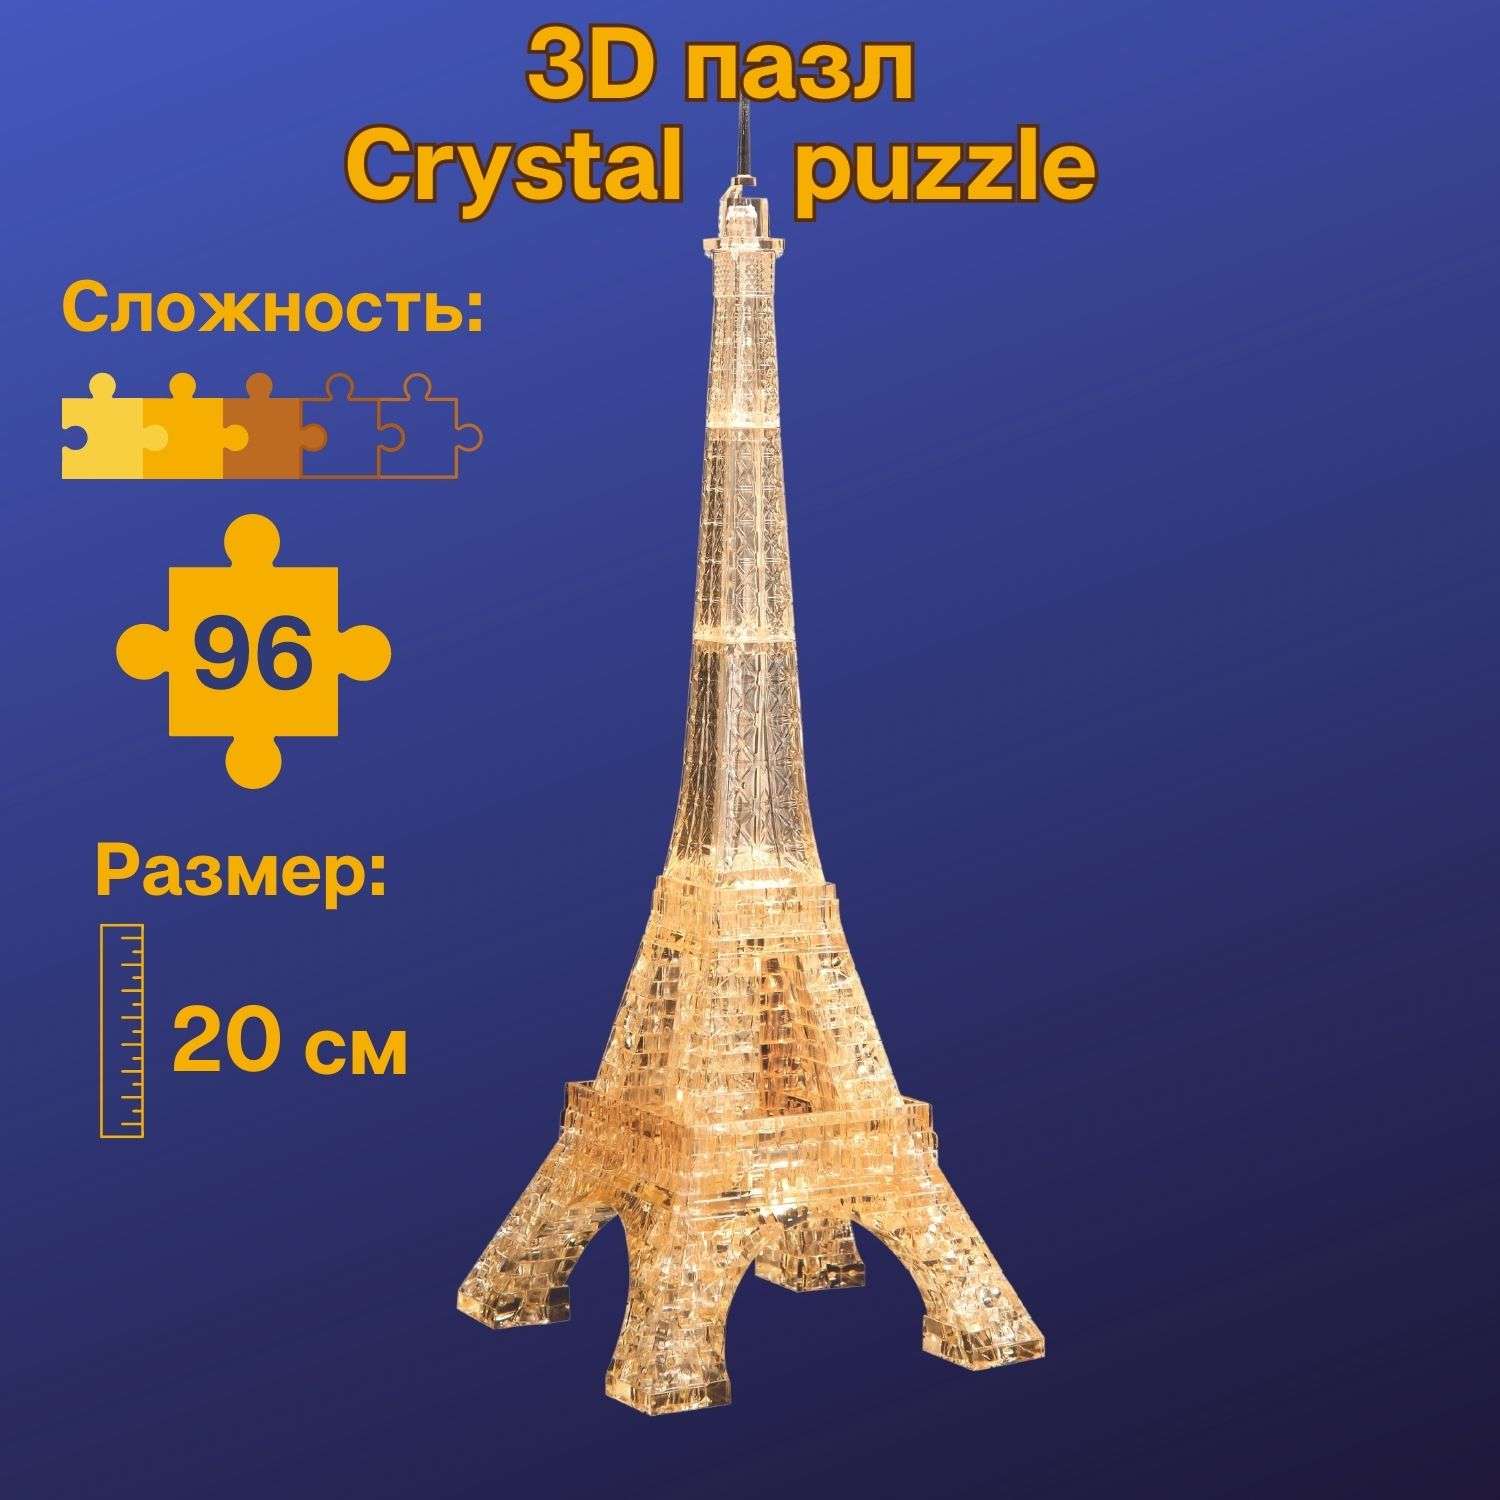 3D-пазл Crystal Puzzle IQ игра для детей кристальная Эйфелева башня 96 деталей - фото 1